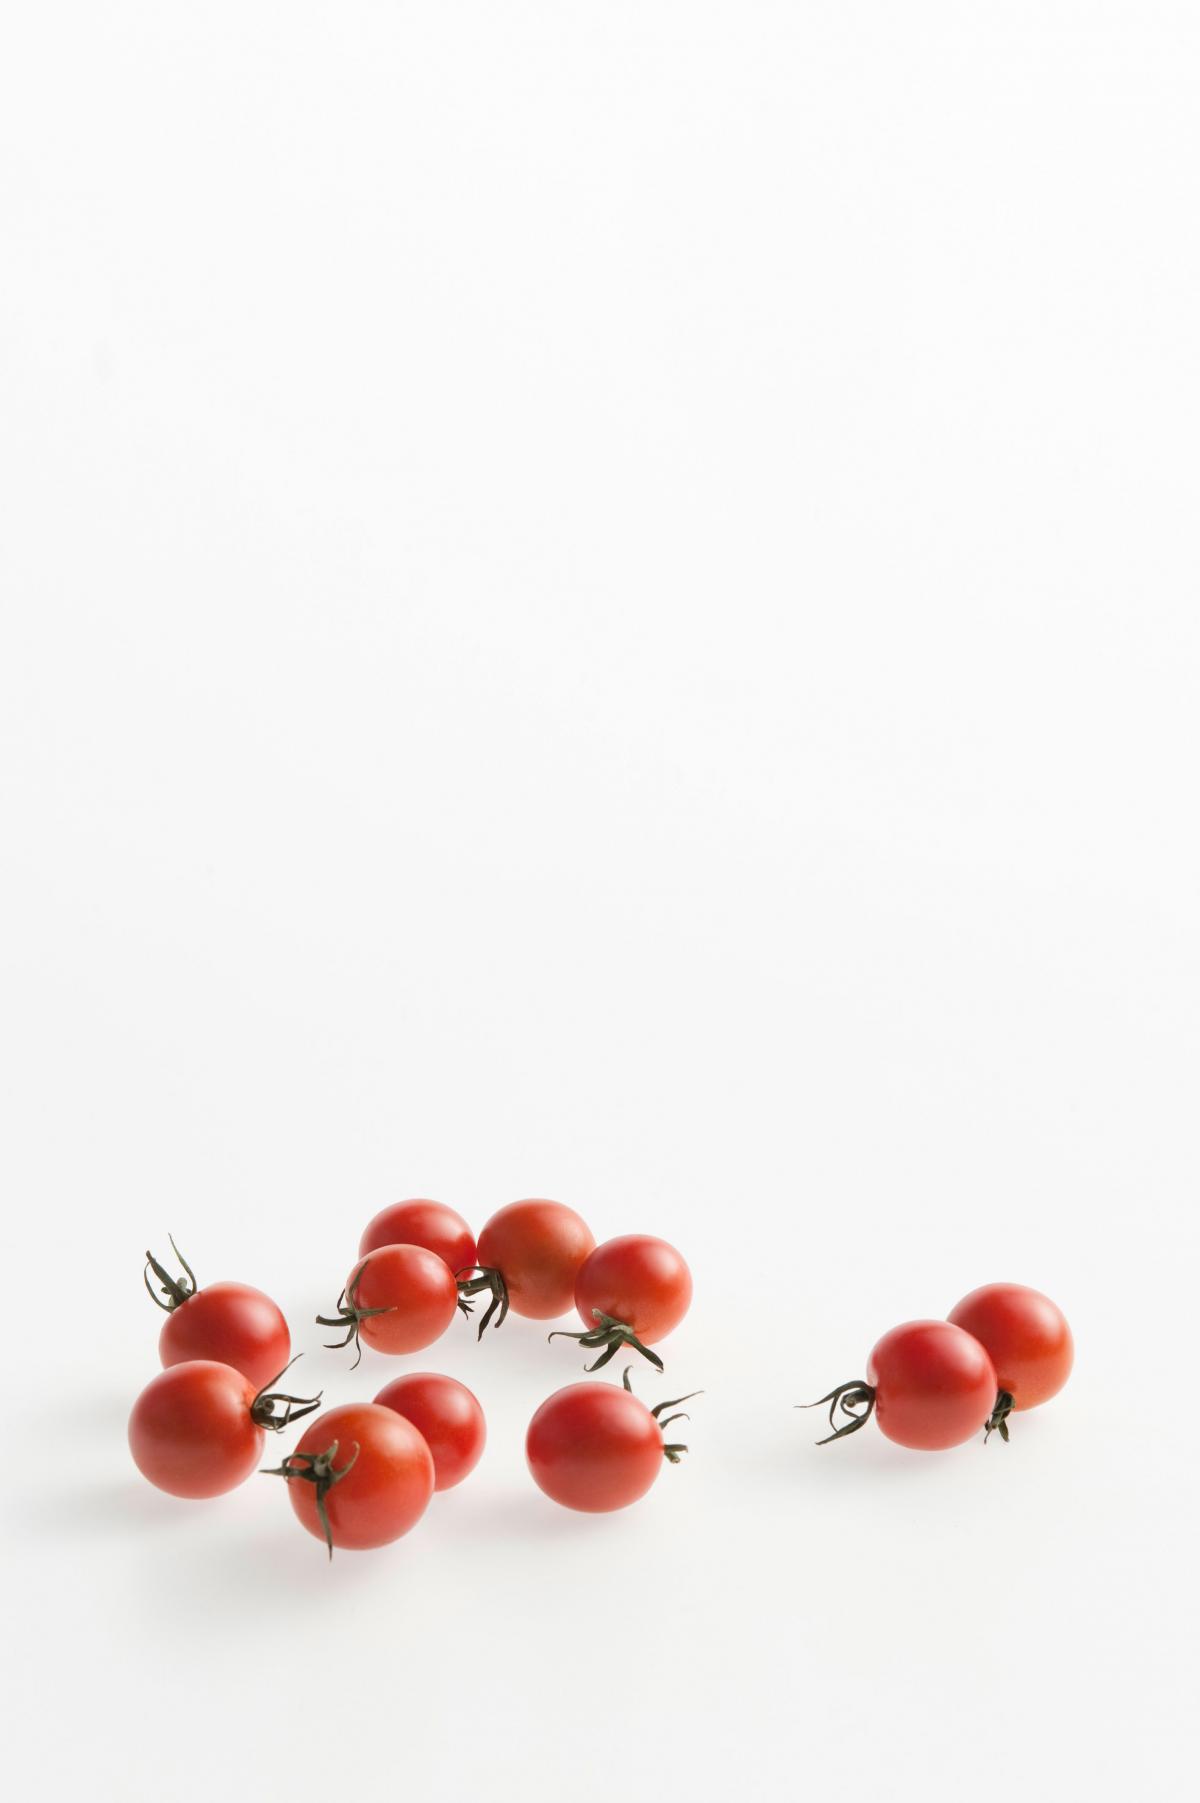 imhofbio cherrytomaten